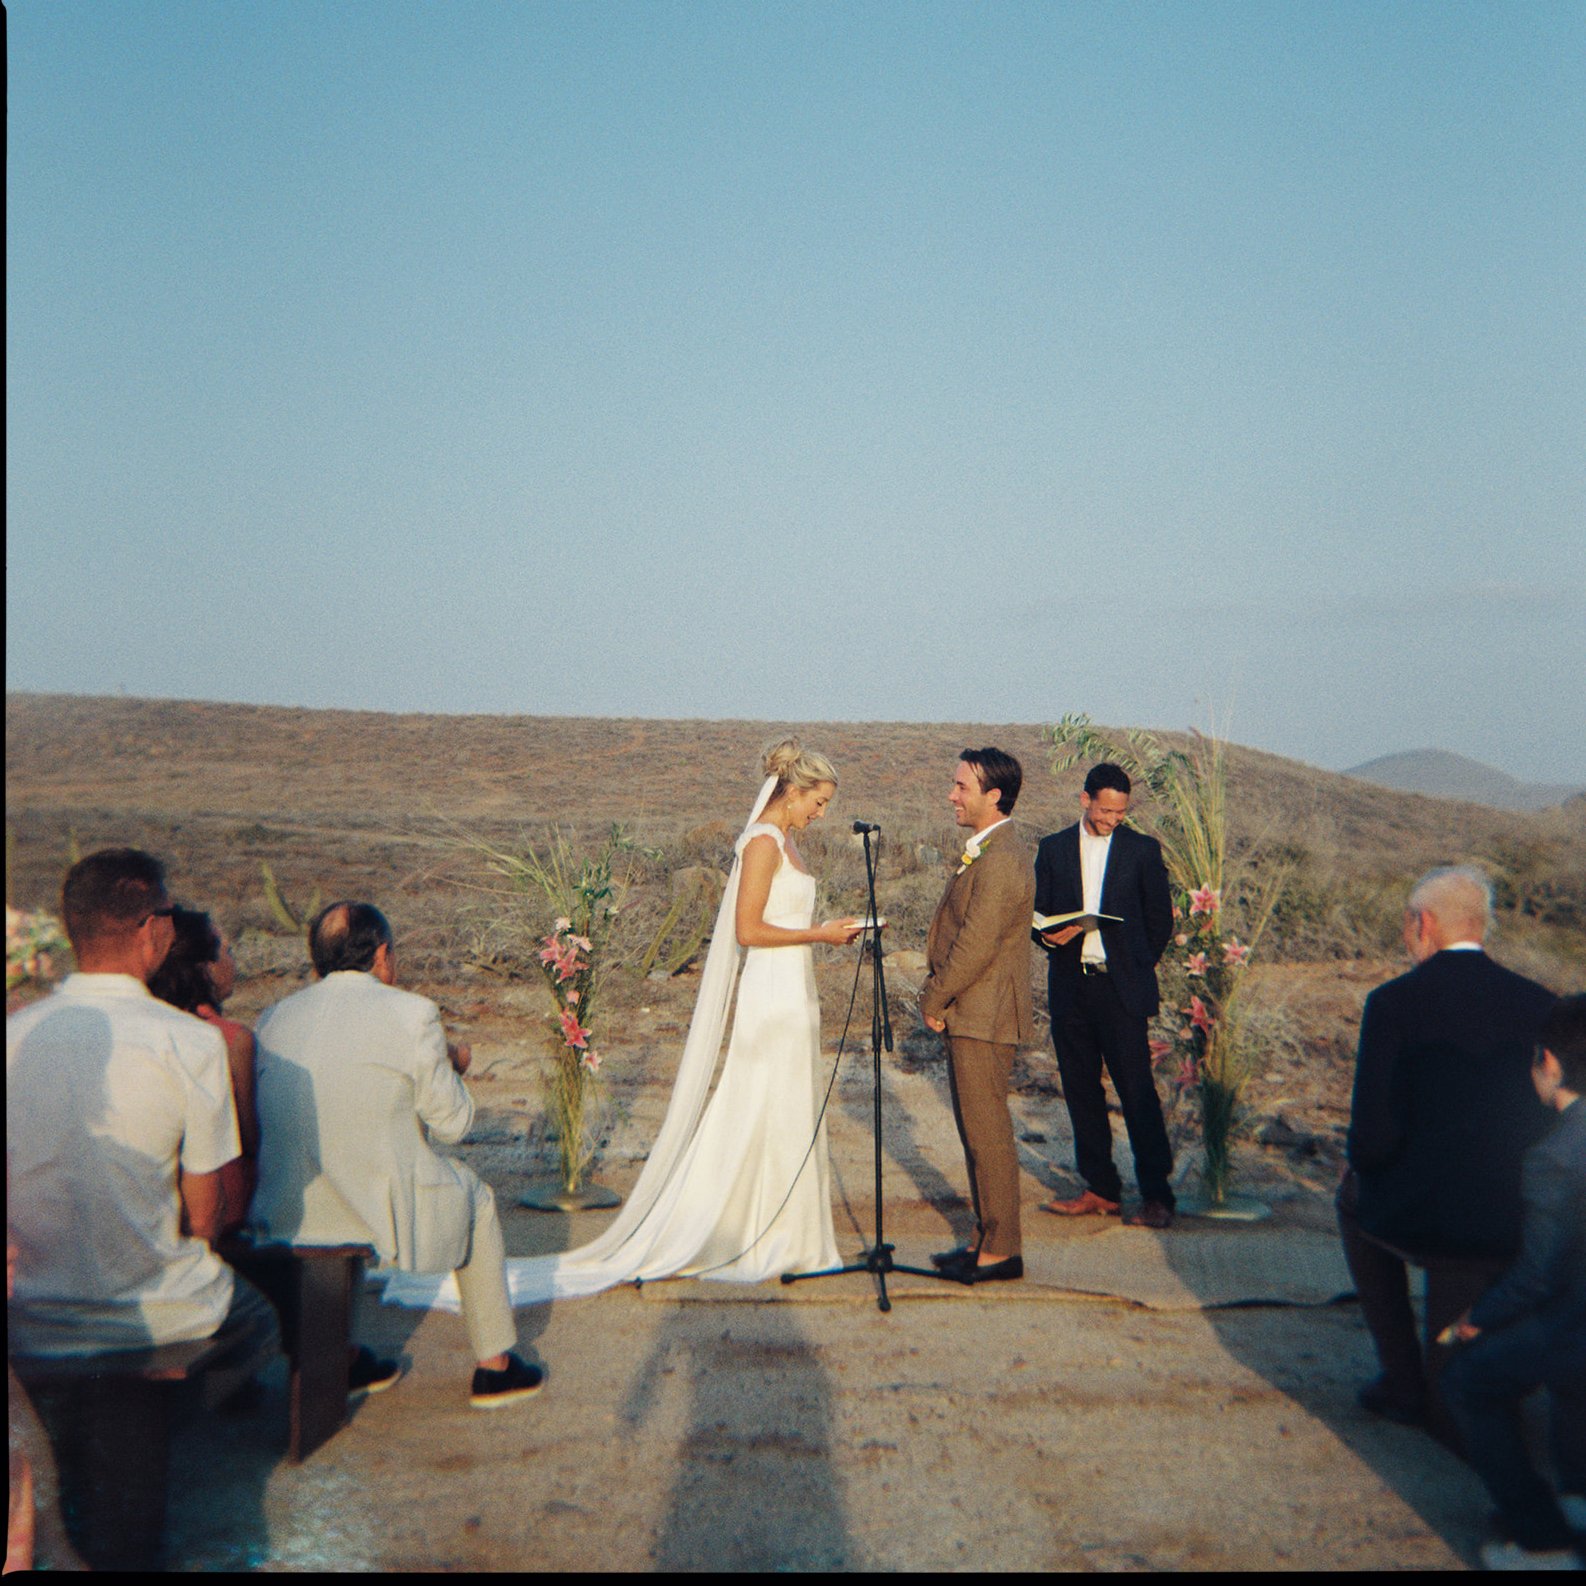 Best-Todos-Santos-Wedding-Photographer-Baja-El Mirador-La Bohemia-35mm-Film-Austin-Mexico-117.jpg